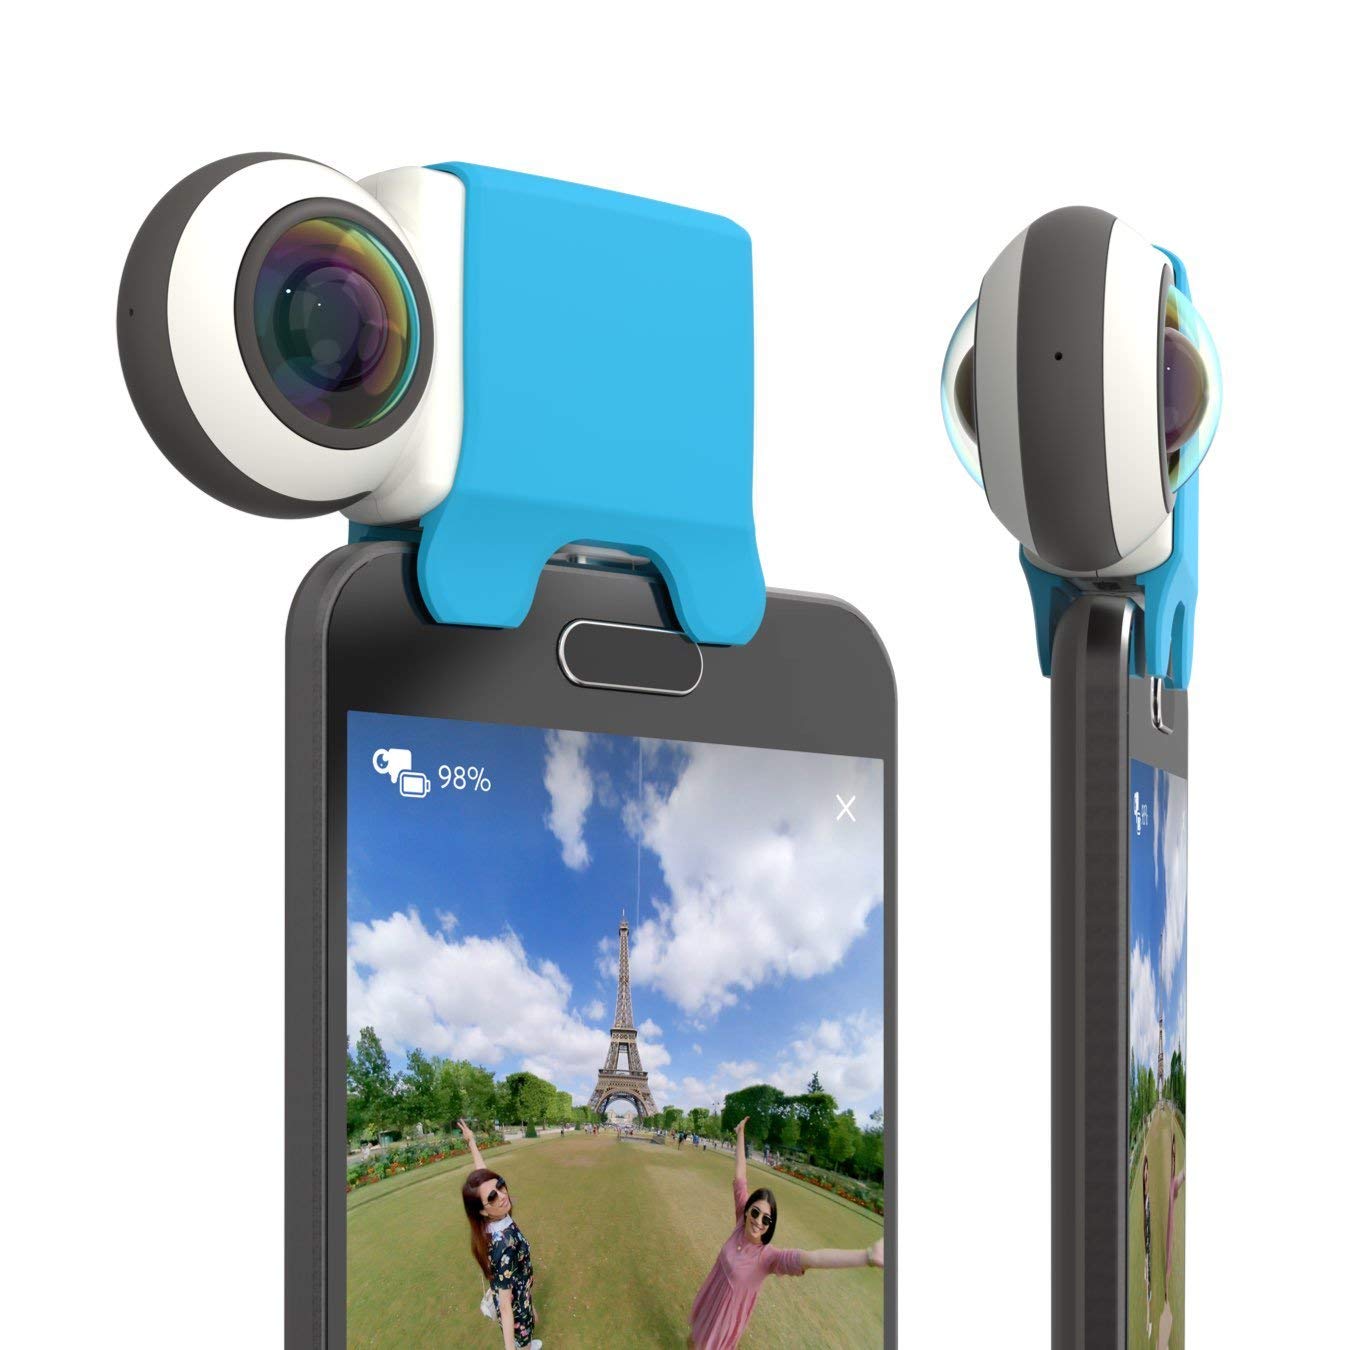 Giroptic iO HD 360 degree camera for iPhone/iPad 1